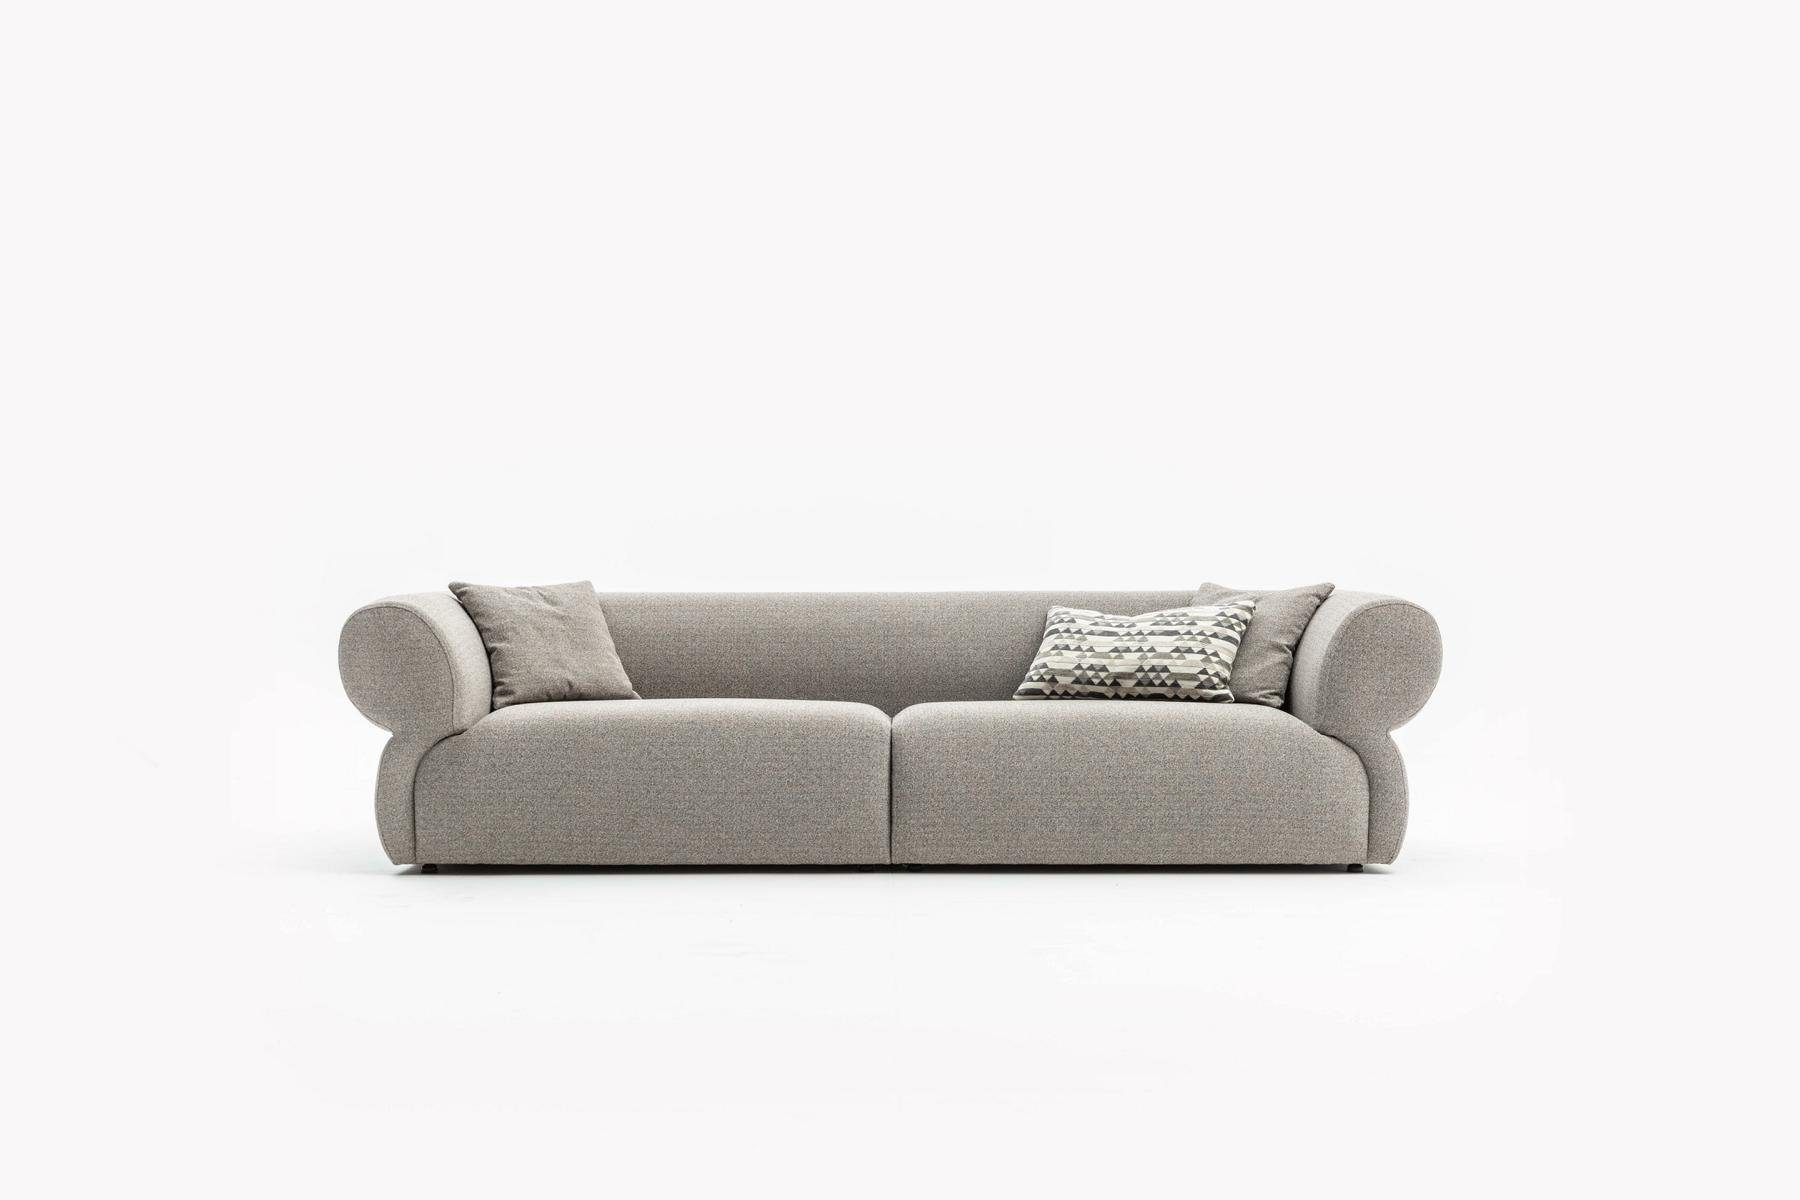 JVmoebel 3-Sitzer Luxus Sofa 3 Sitzer Wohnzimmer Modern Design Polsterstoff Neu, Made in Europe